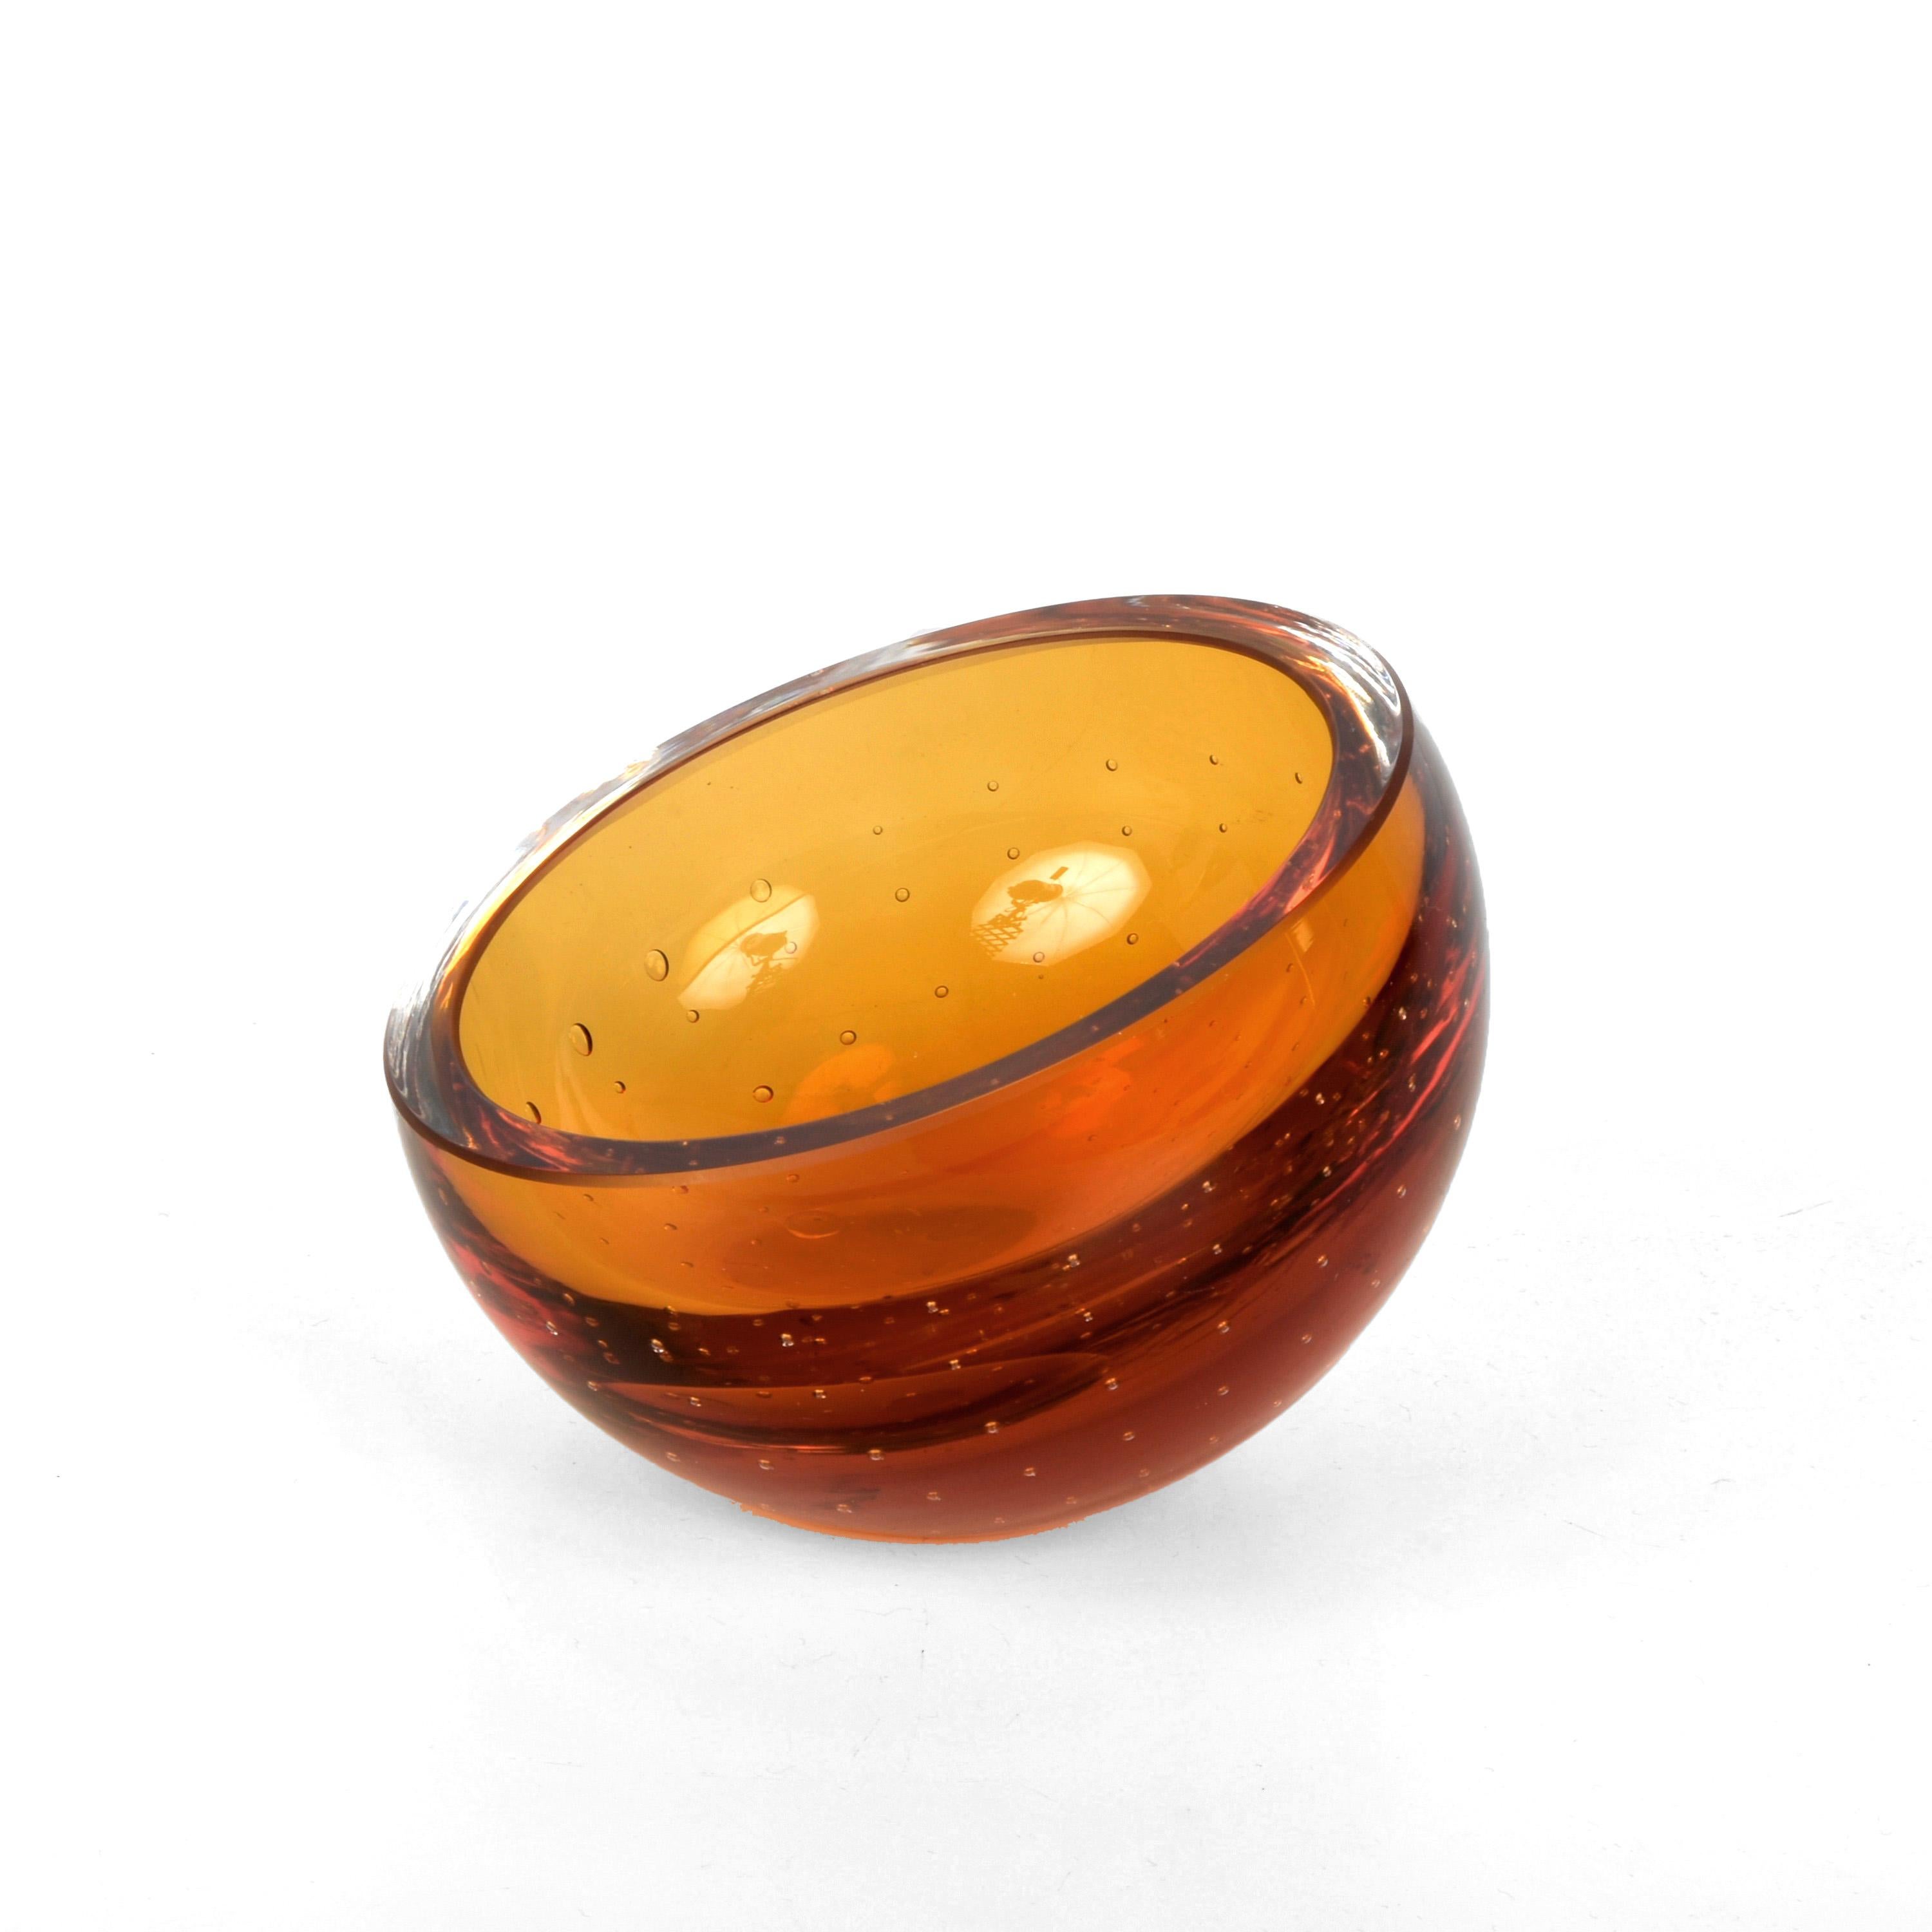 Spectaculaire bol décoratif du milieu du siècle en verre de Murano ambré avec des bulles d'air (bullicante). Cette merveilleuse pièce a été produite en Italie dans les années 1960 et est attribuée à Galliano Ferro.

Cette pièce est unique en